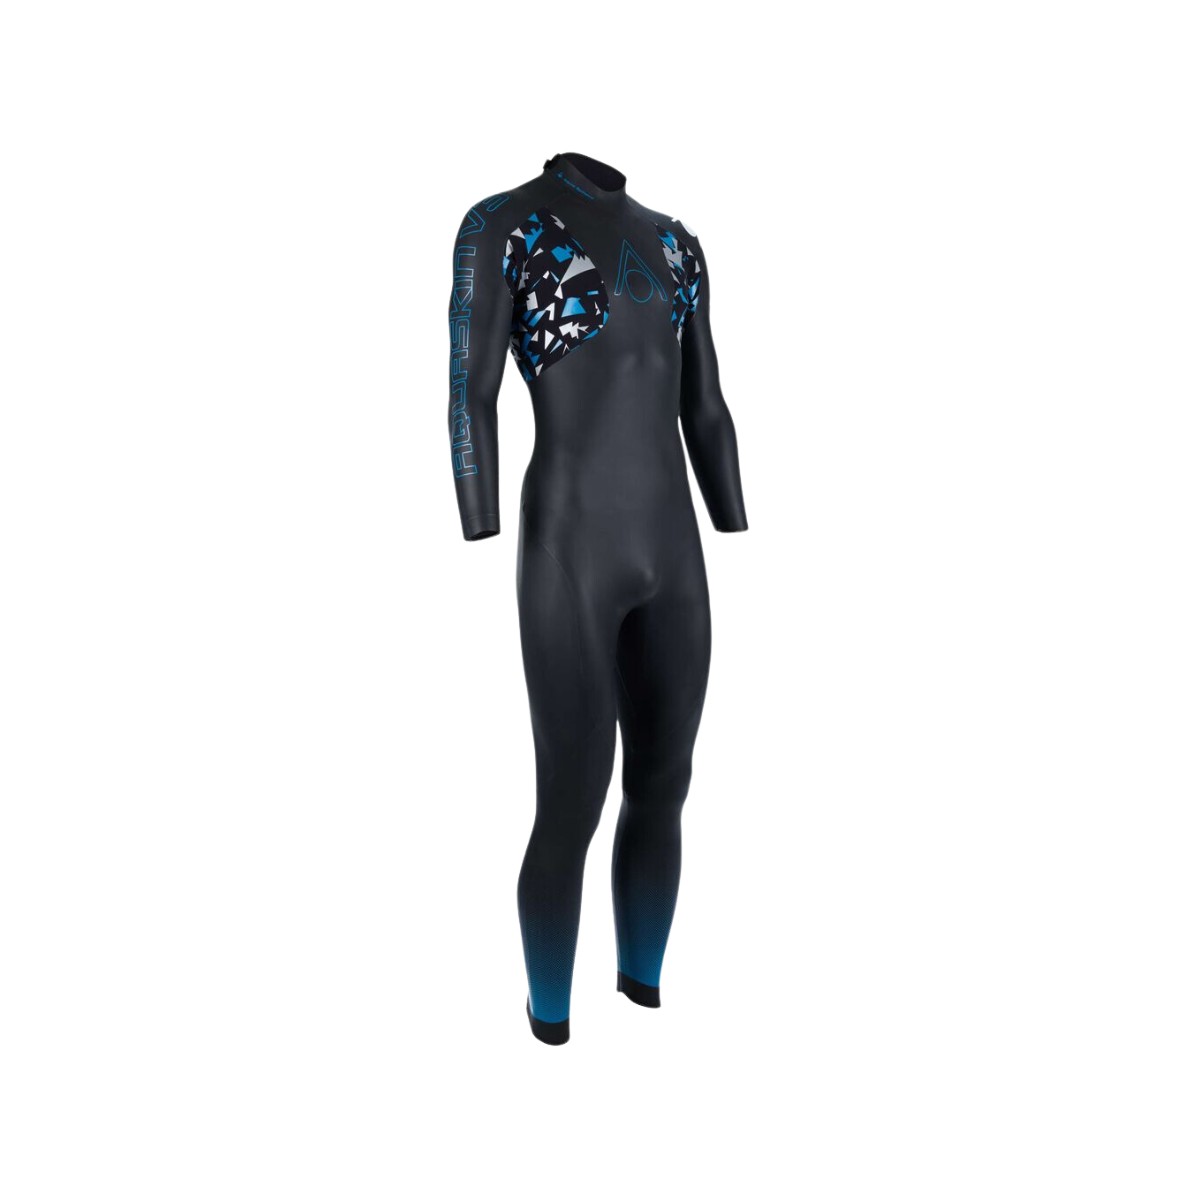 Combinaison Aquasphere Aquaskin Full Suit V3 Noir Turquoise, Taille XL